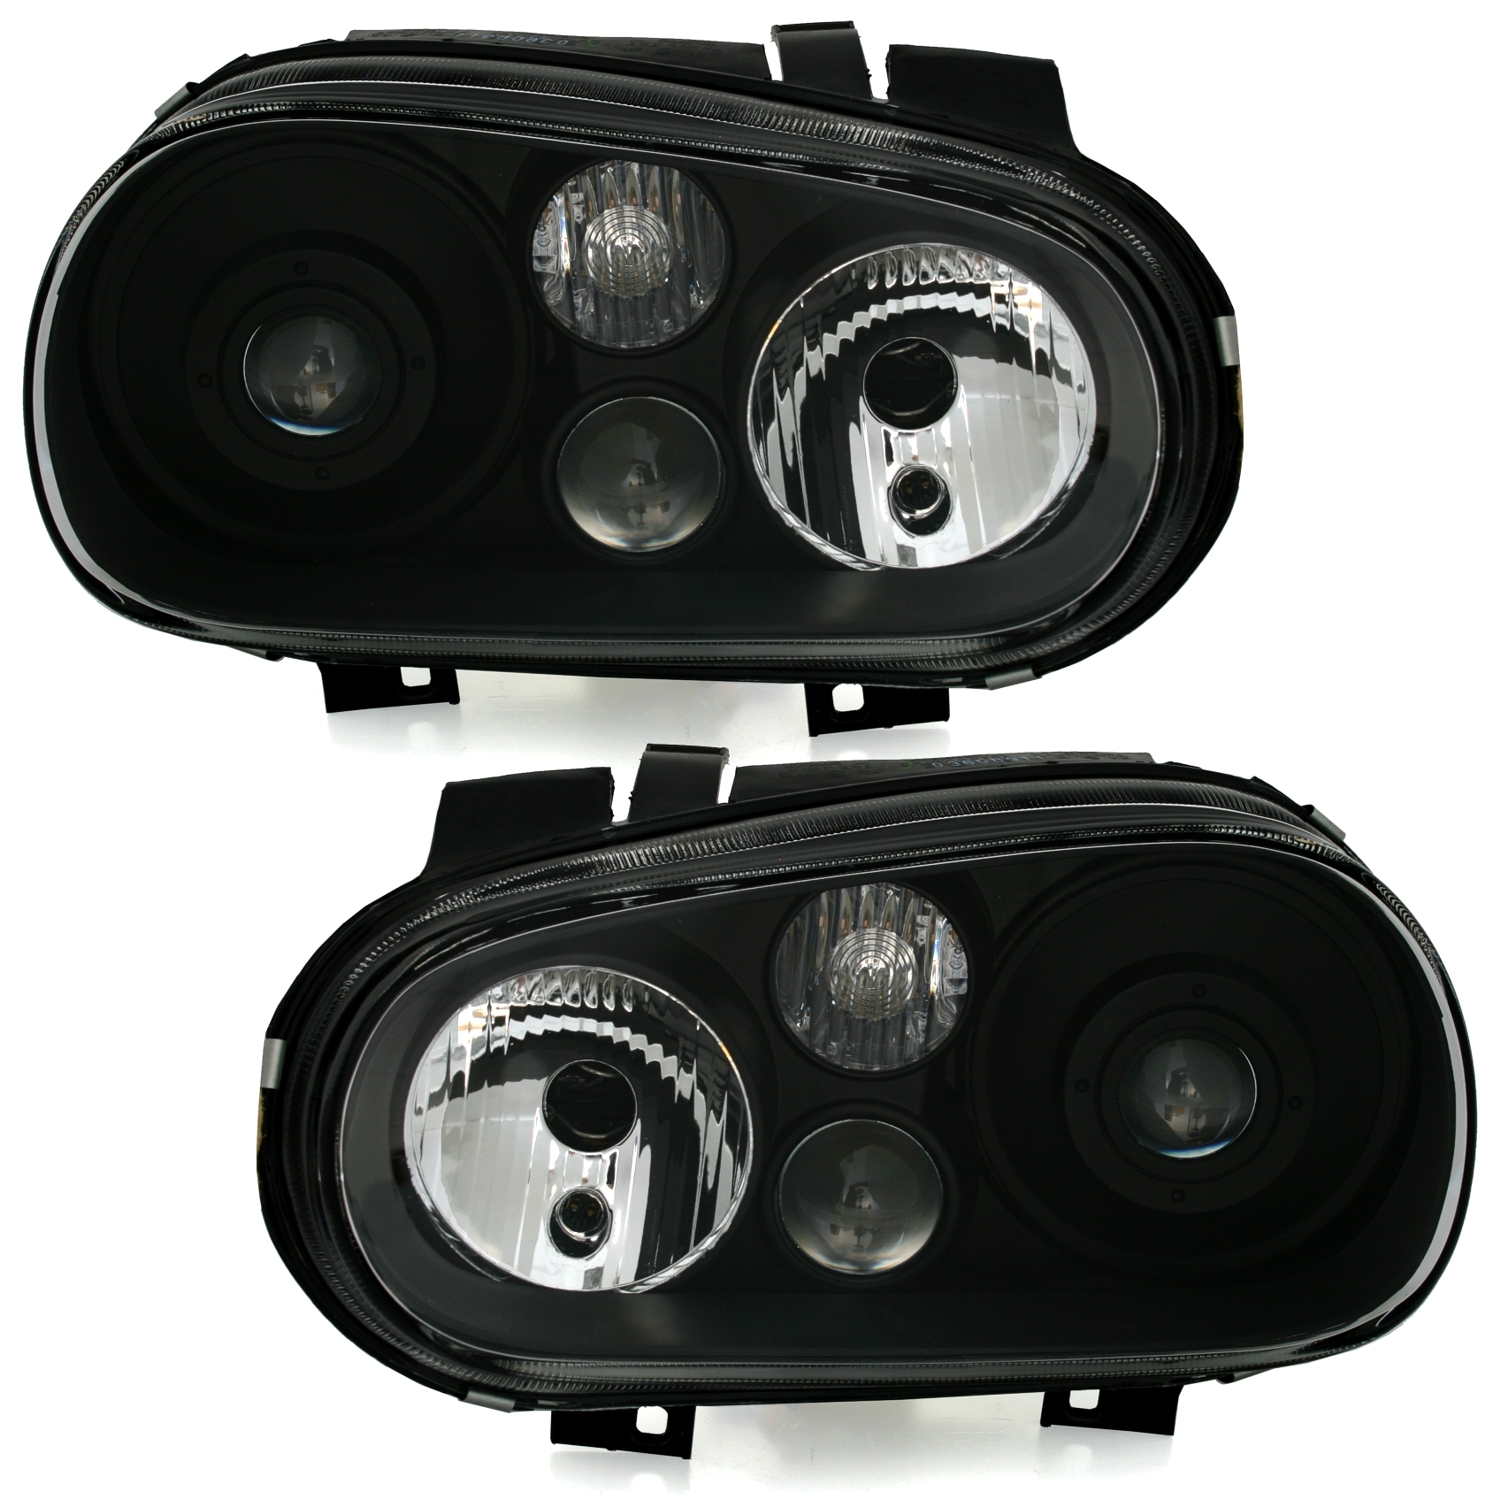 Scheinwerfer für Golf 4 LED und Xenon kaufen - Original Qualität